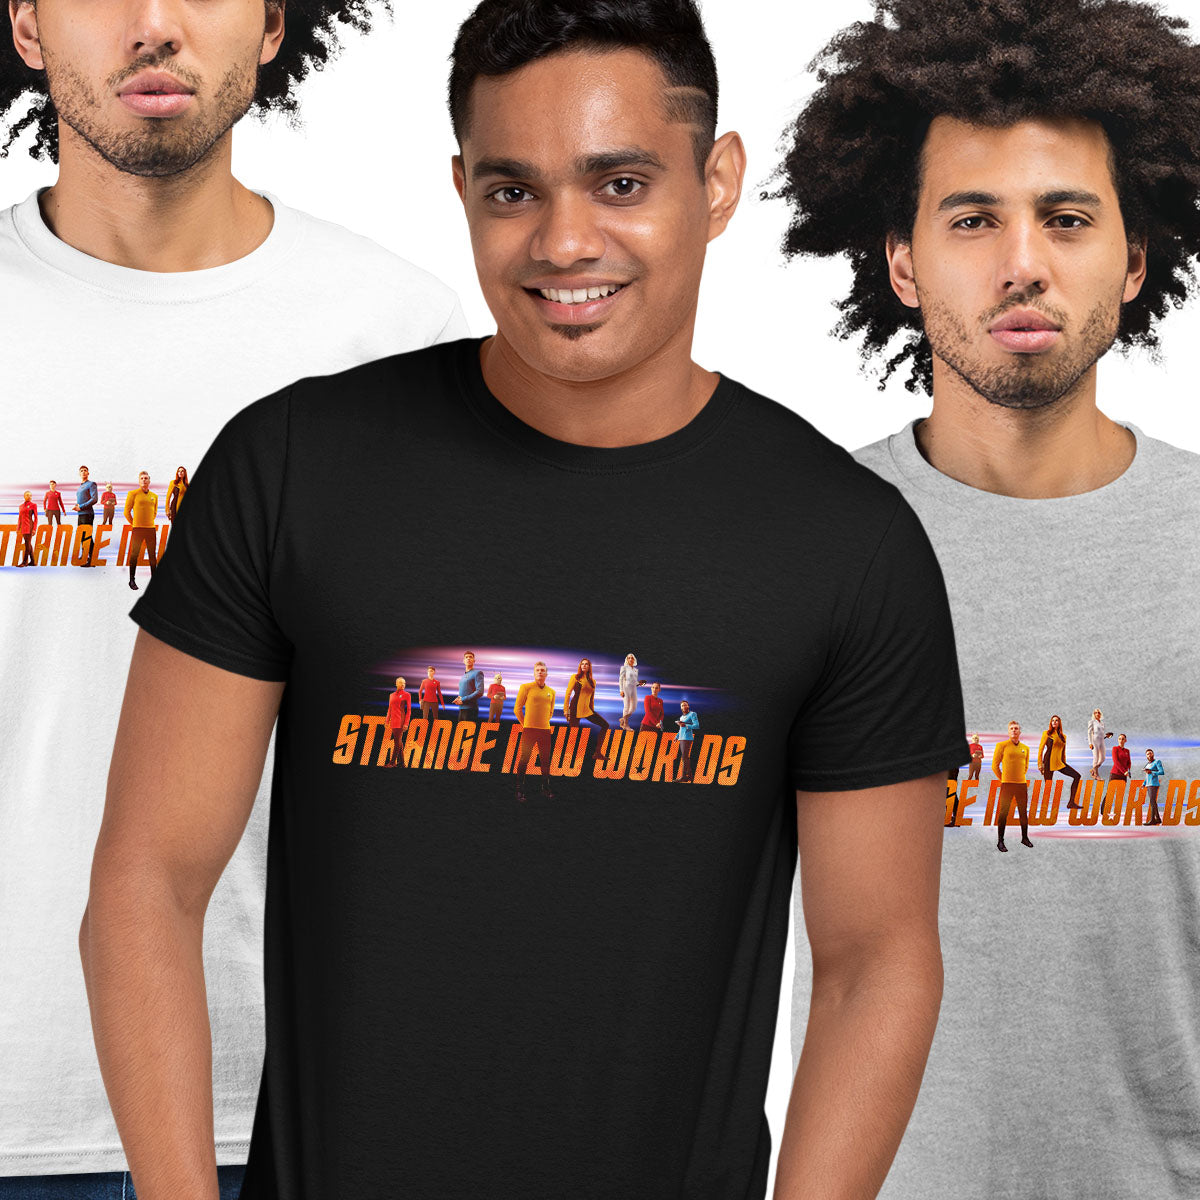 New Star Trek captiain t-shirt from tv series of Strange new worlds - Kuzi Tees